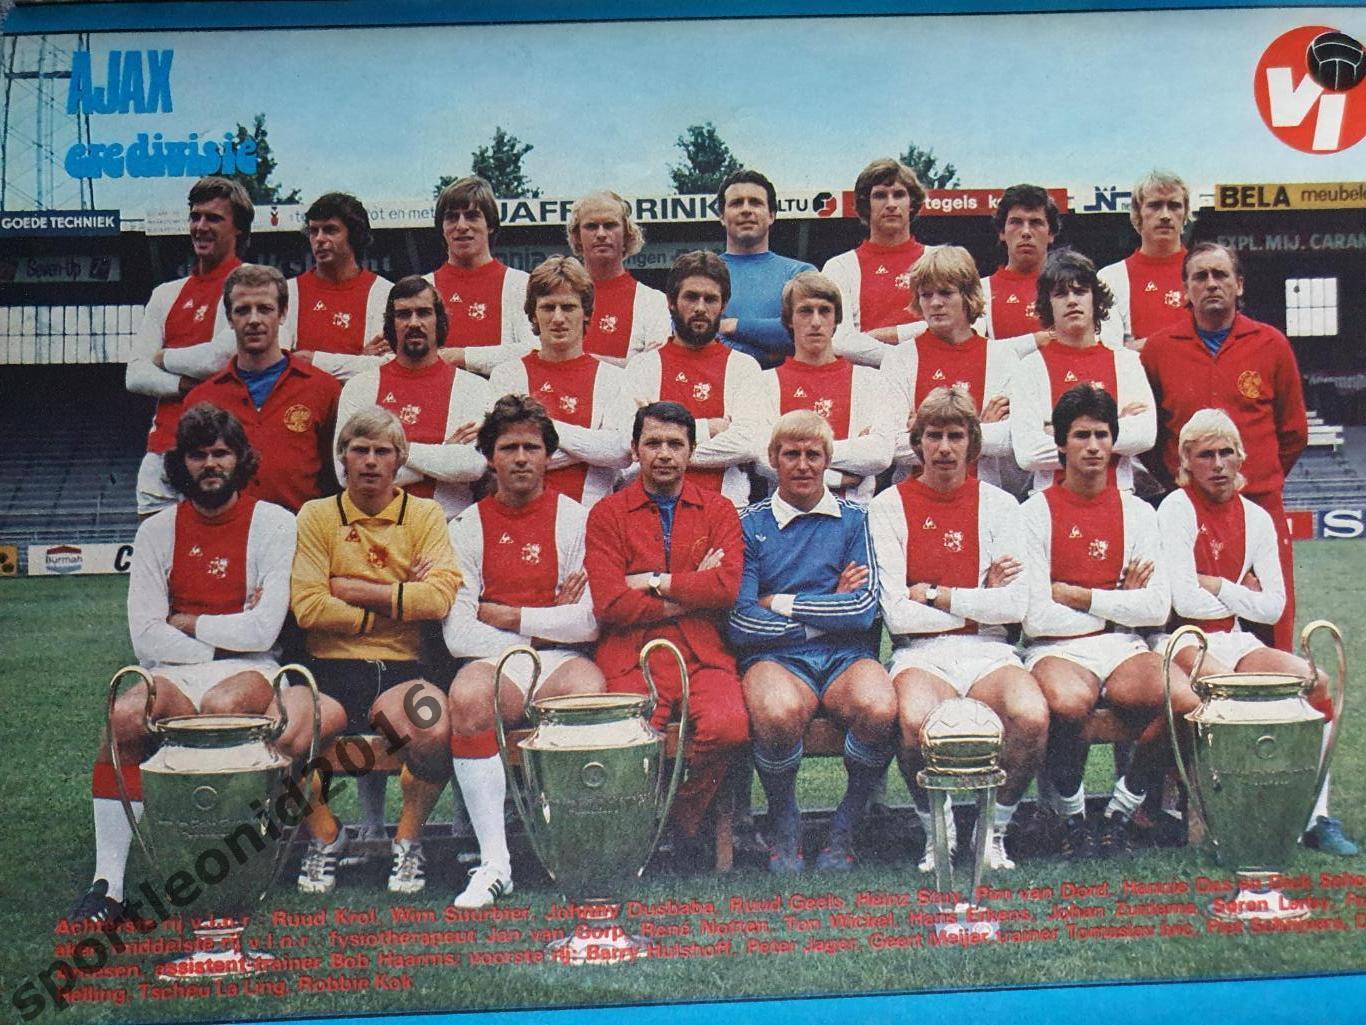 Voetbal International 1977 51 выпуск годовая подписка .2 1